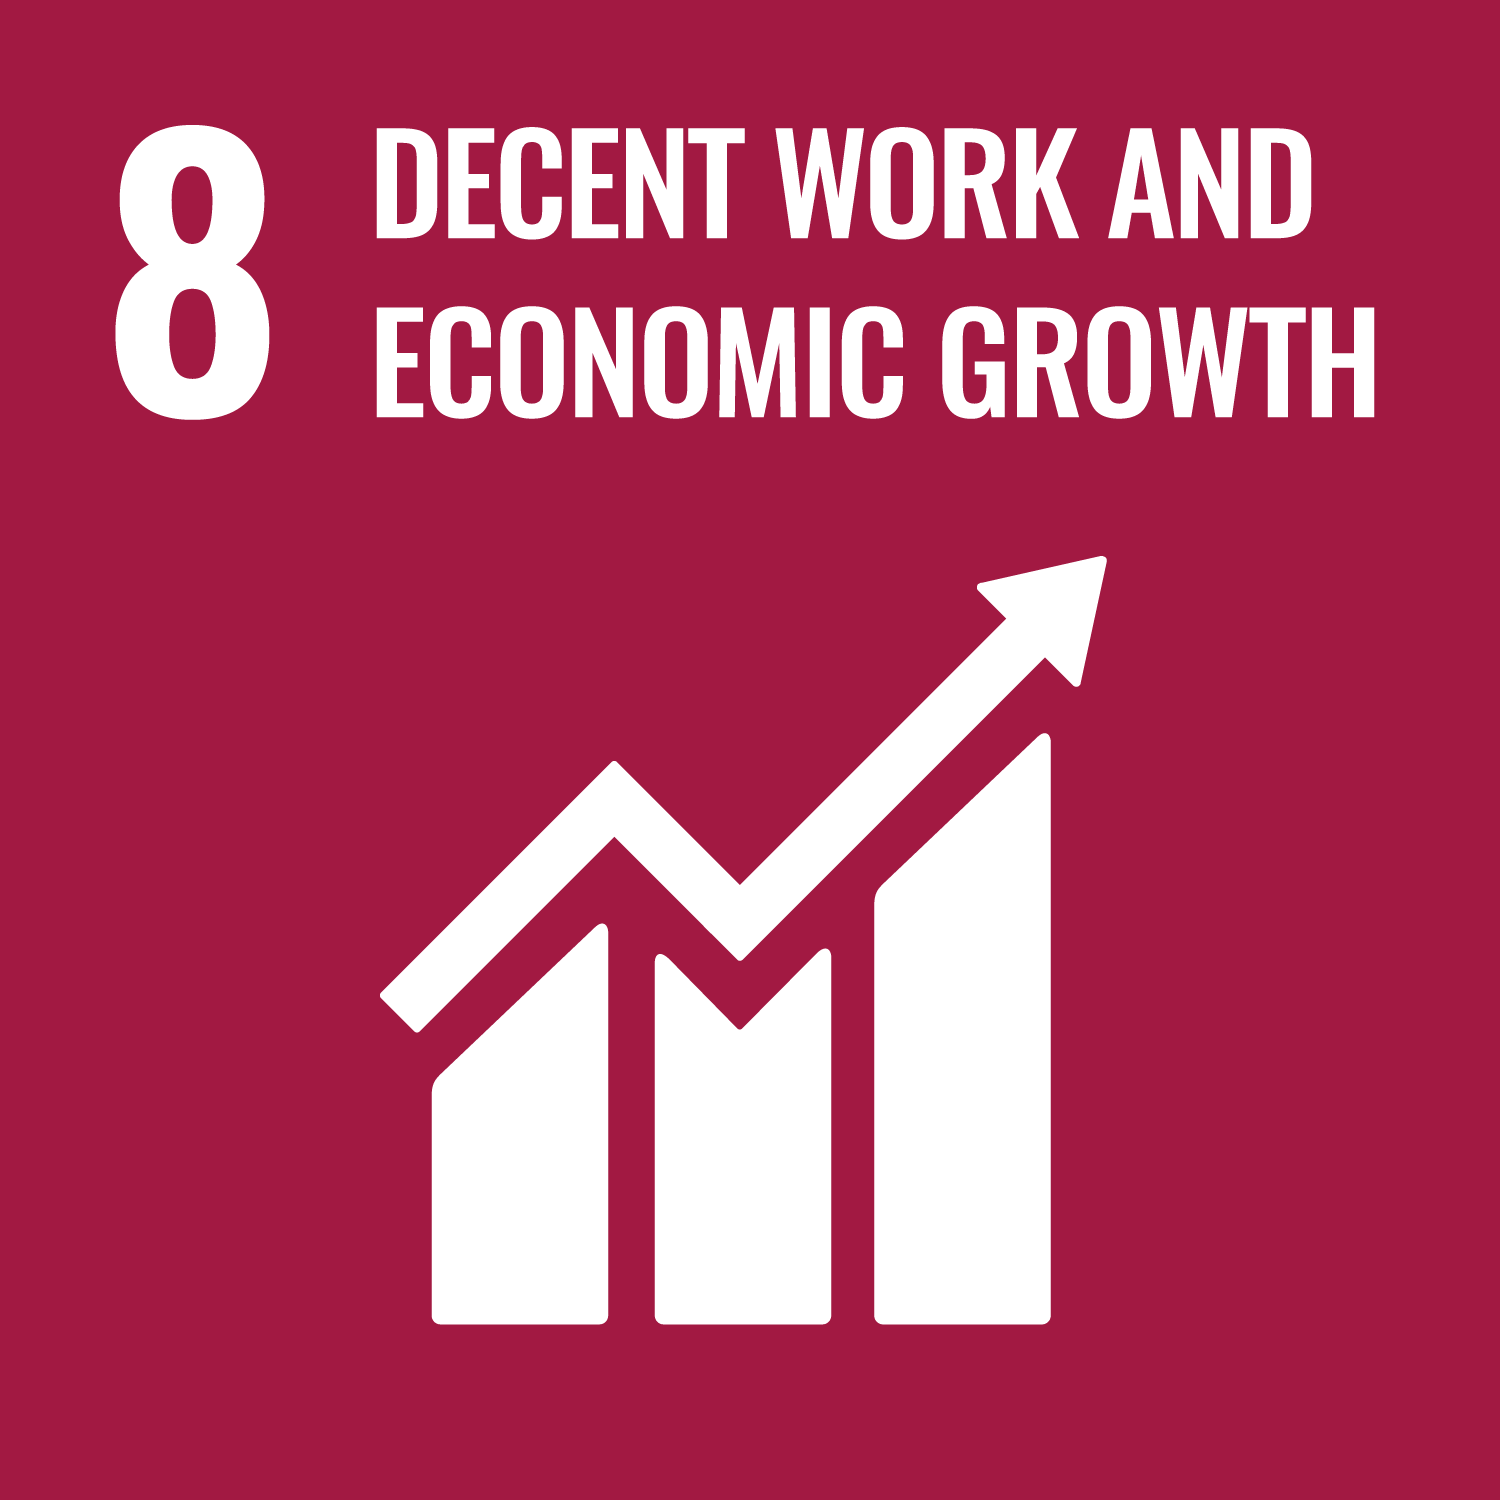 FN:s hållbara utvecklingsmål 8: Anständiga arbetsvillkor och ekonomisk tillväxt. Ett kastanjebrunt diagram med en uppåtpil som symboliserar framsteg. Siffra "8" och texten "ANSTÄNDIGA ARBETSVILLKOR OCH EKONOMISK TILLVÄXT" längst upp.